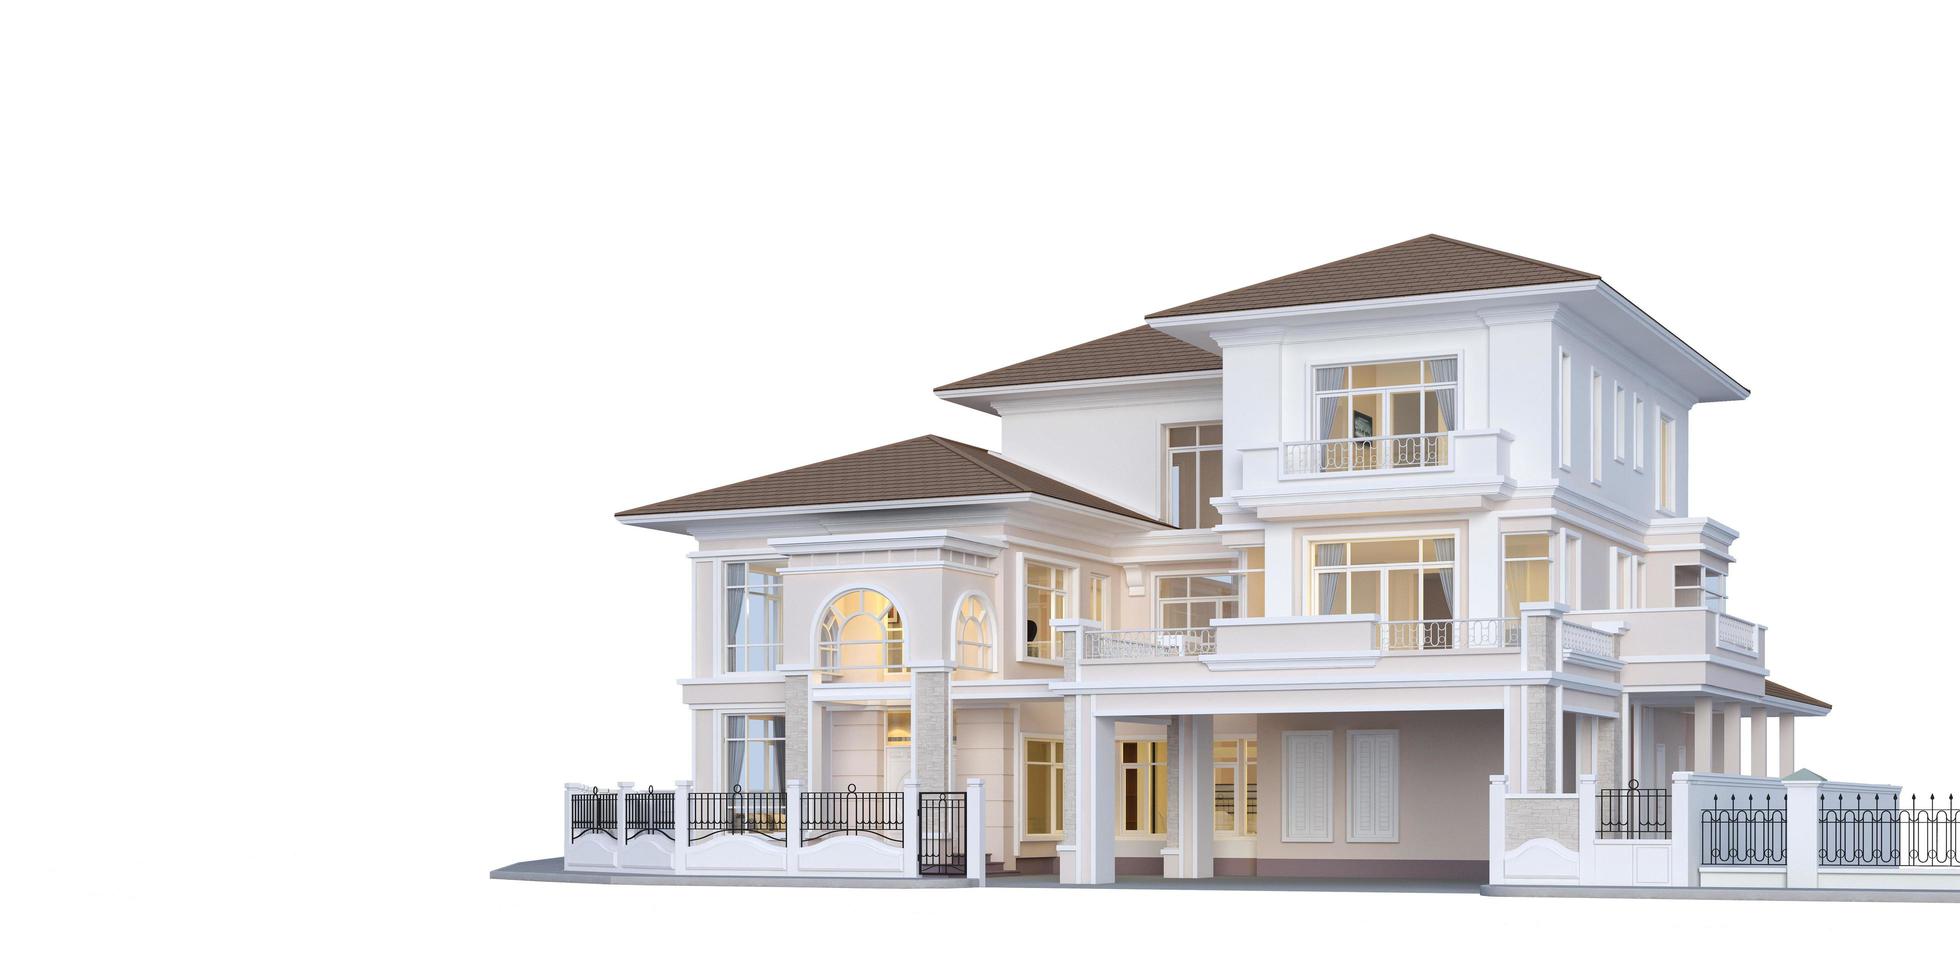 casa de luxo exterior estilo clássico em fundo branco conceito para venda de imóveis ou investimento de propriedade renderização em 3d foto